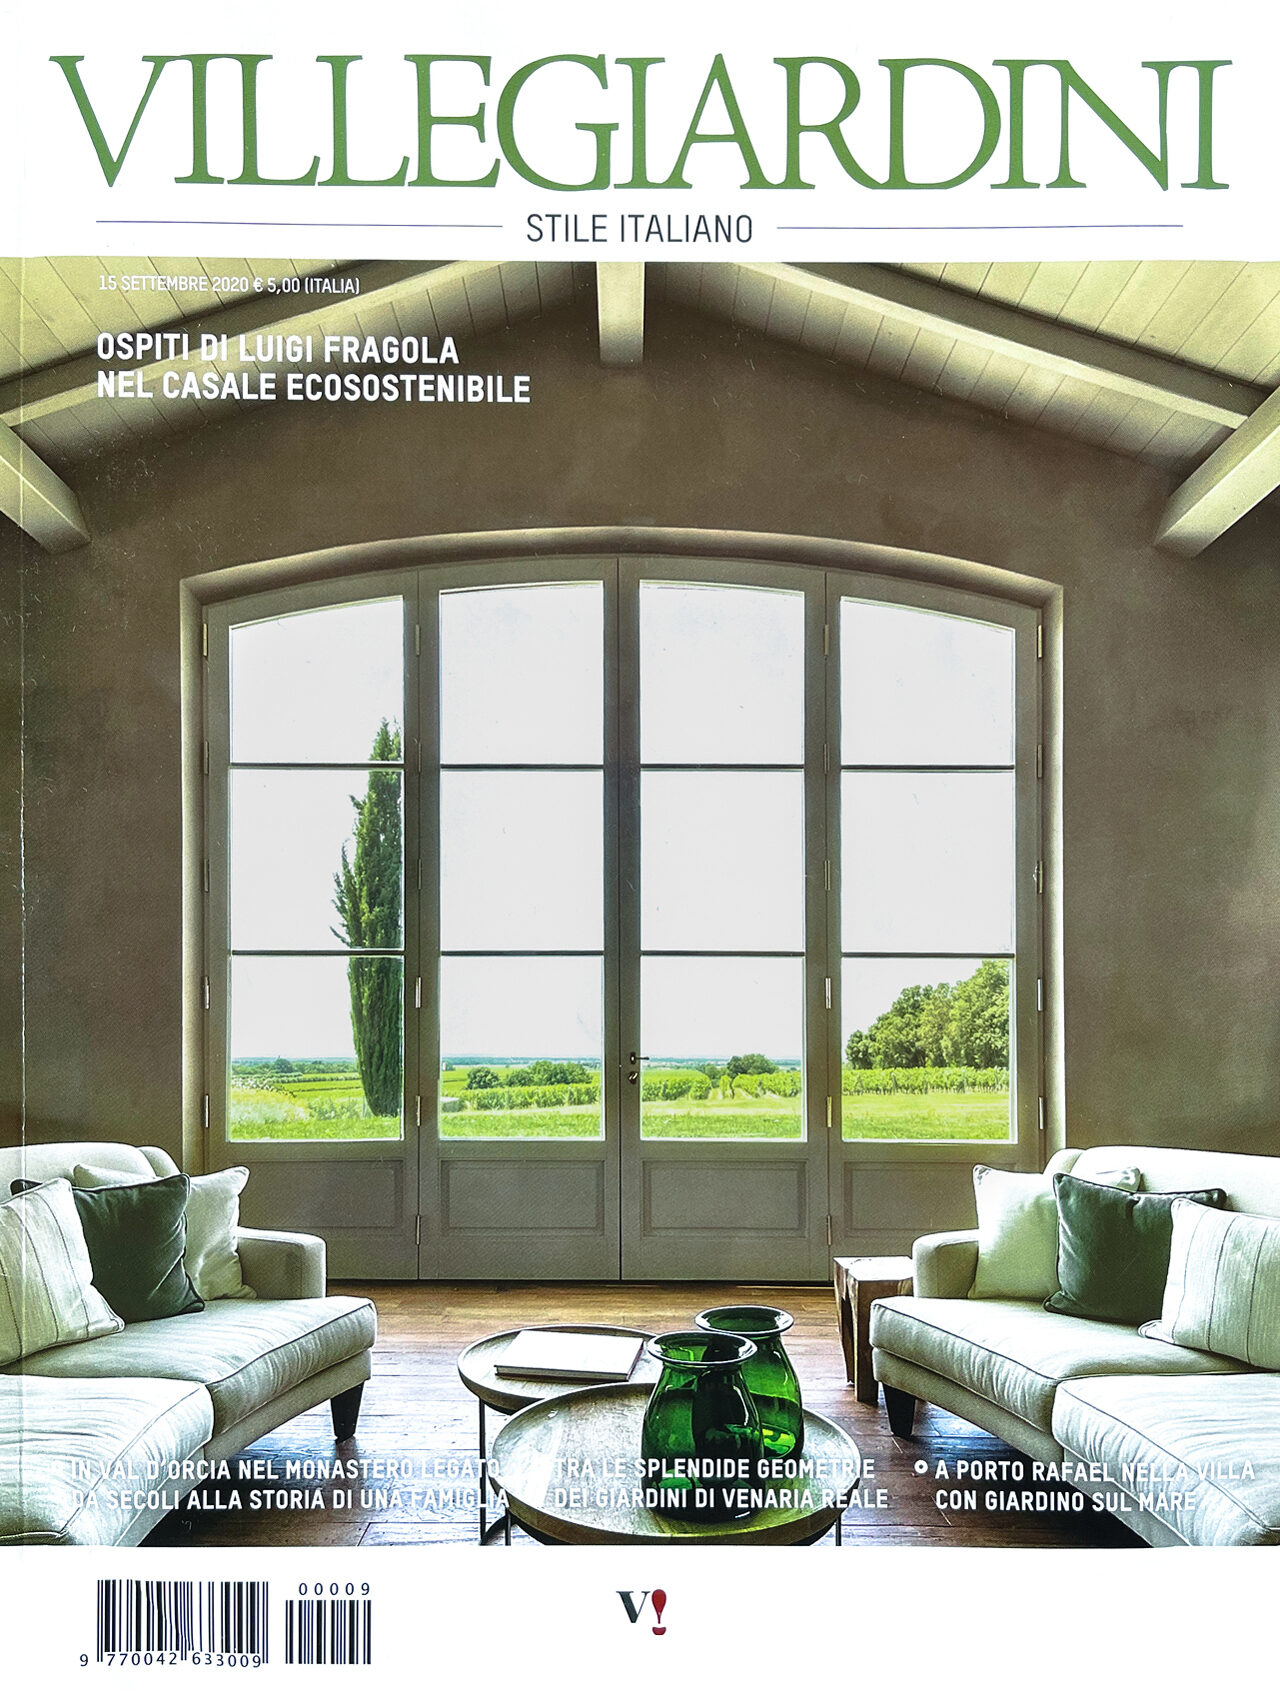 Copertina VilleGiardini, rivista che ha dedicato un articolo allo studio design interni Firenze Luigi Fragola Architects